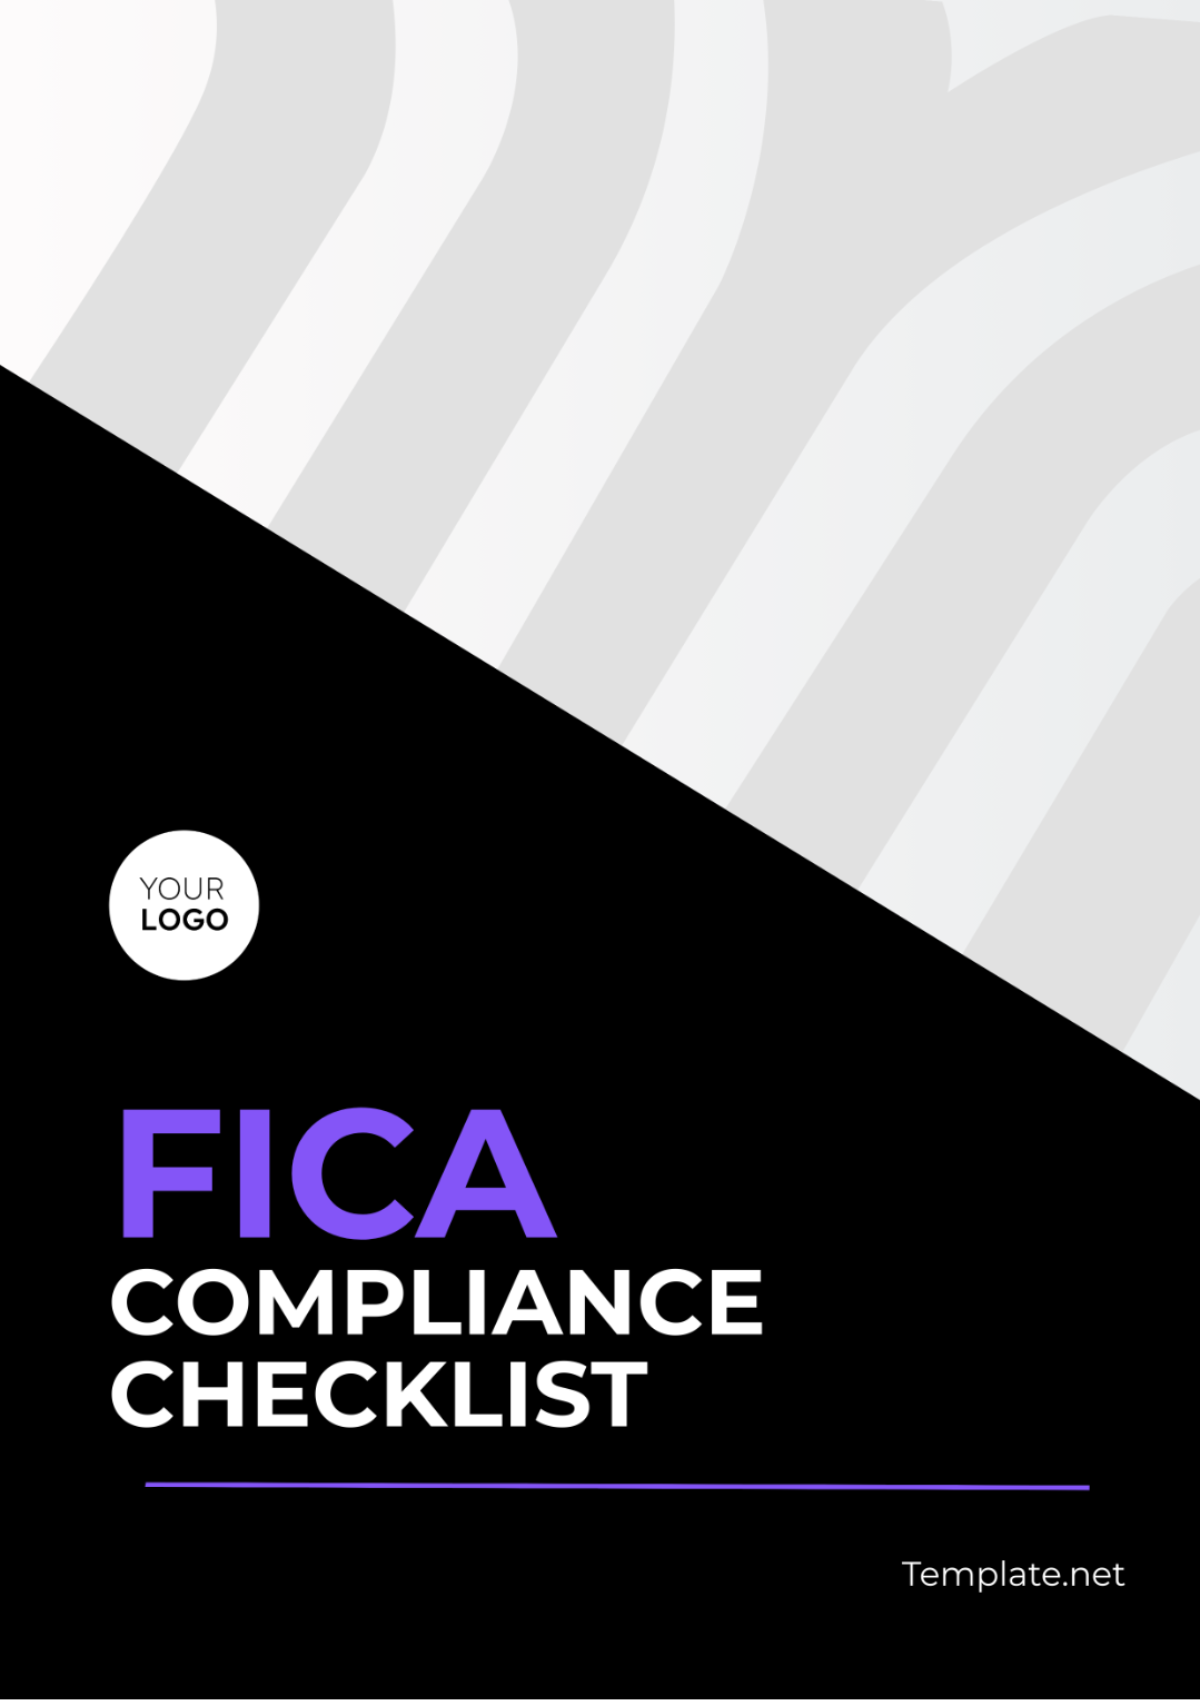 FICA Compliance Checklist Template